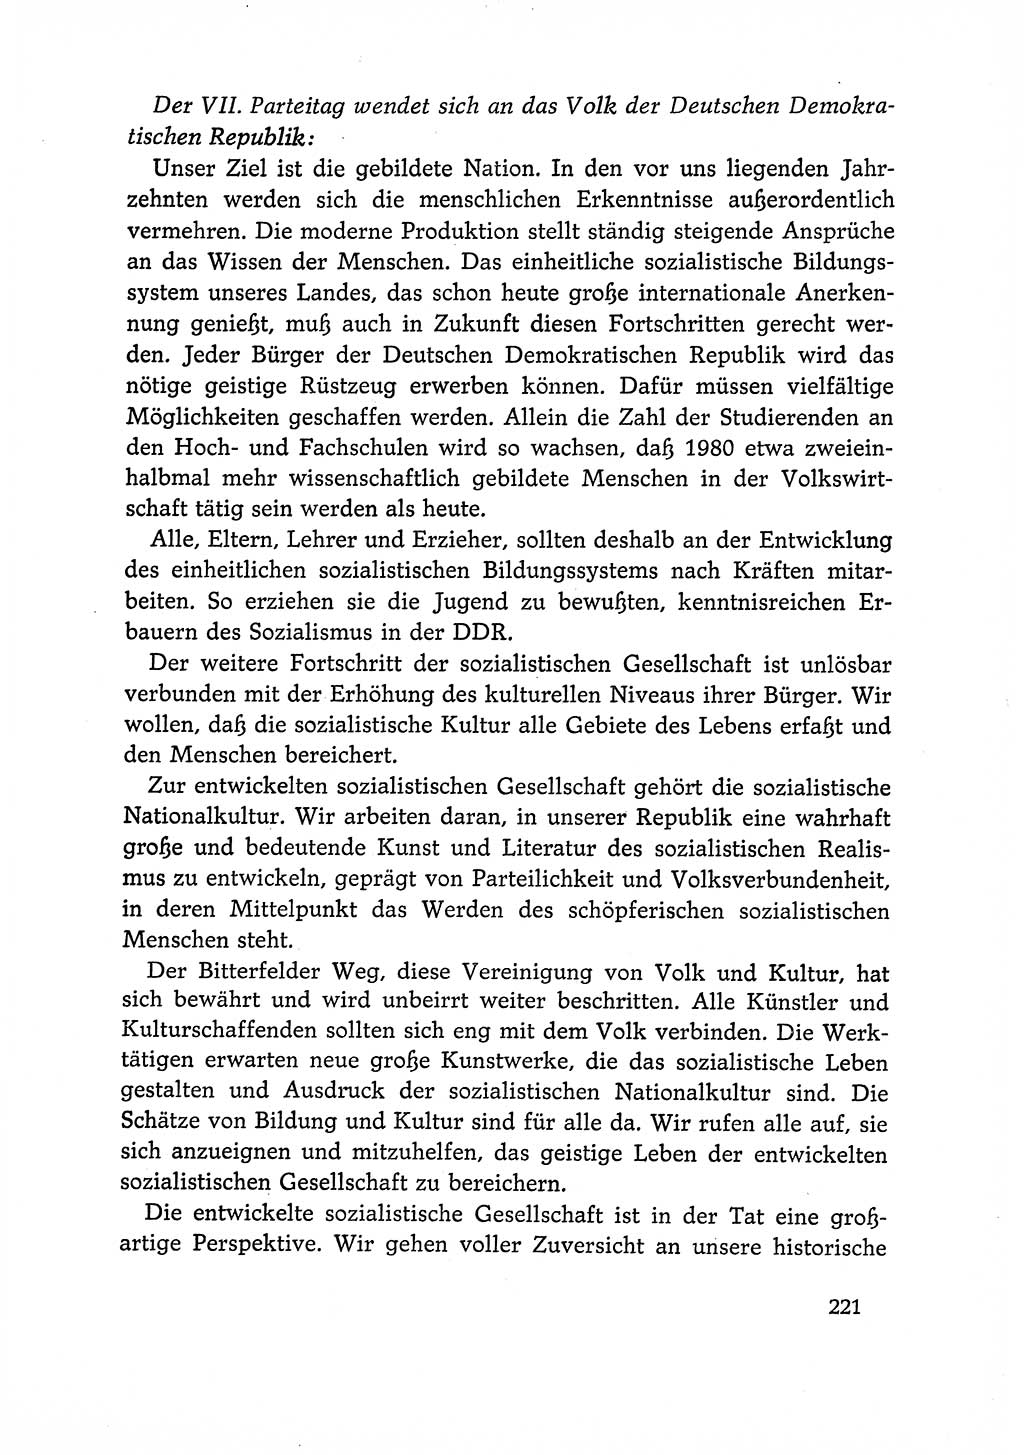 Dokumente der Sozialistischen Einheitspartei Deutschlands (SED) [Deutsche Demokratische Republik (DDR)] 1966-1967, Seite 221 (Dok. SED DDR 1966-1967, S. 221)